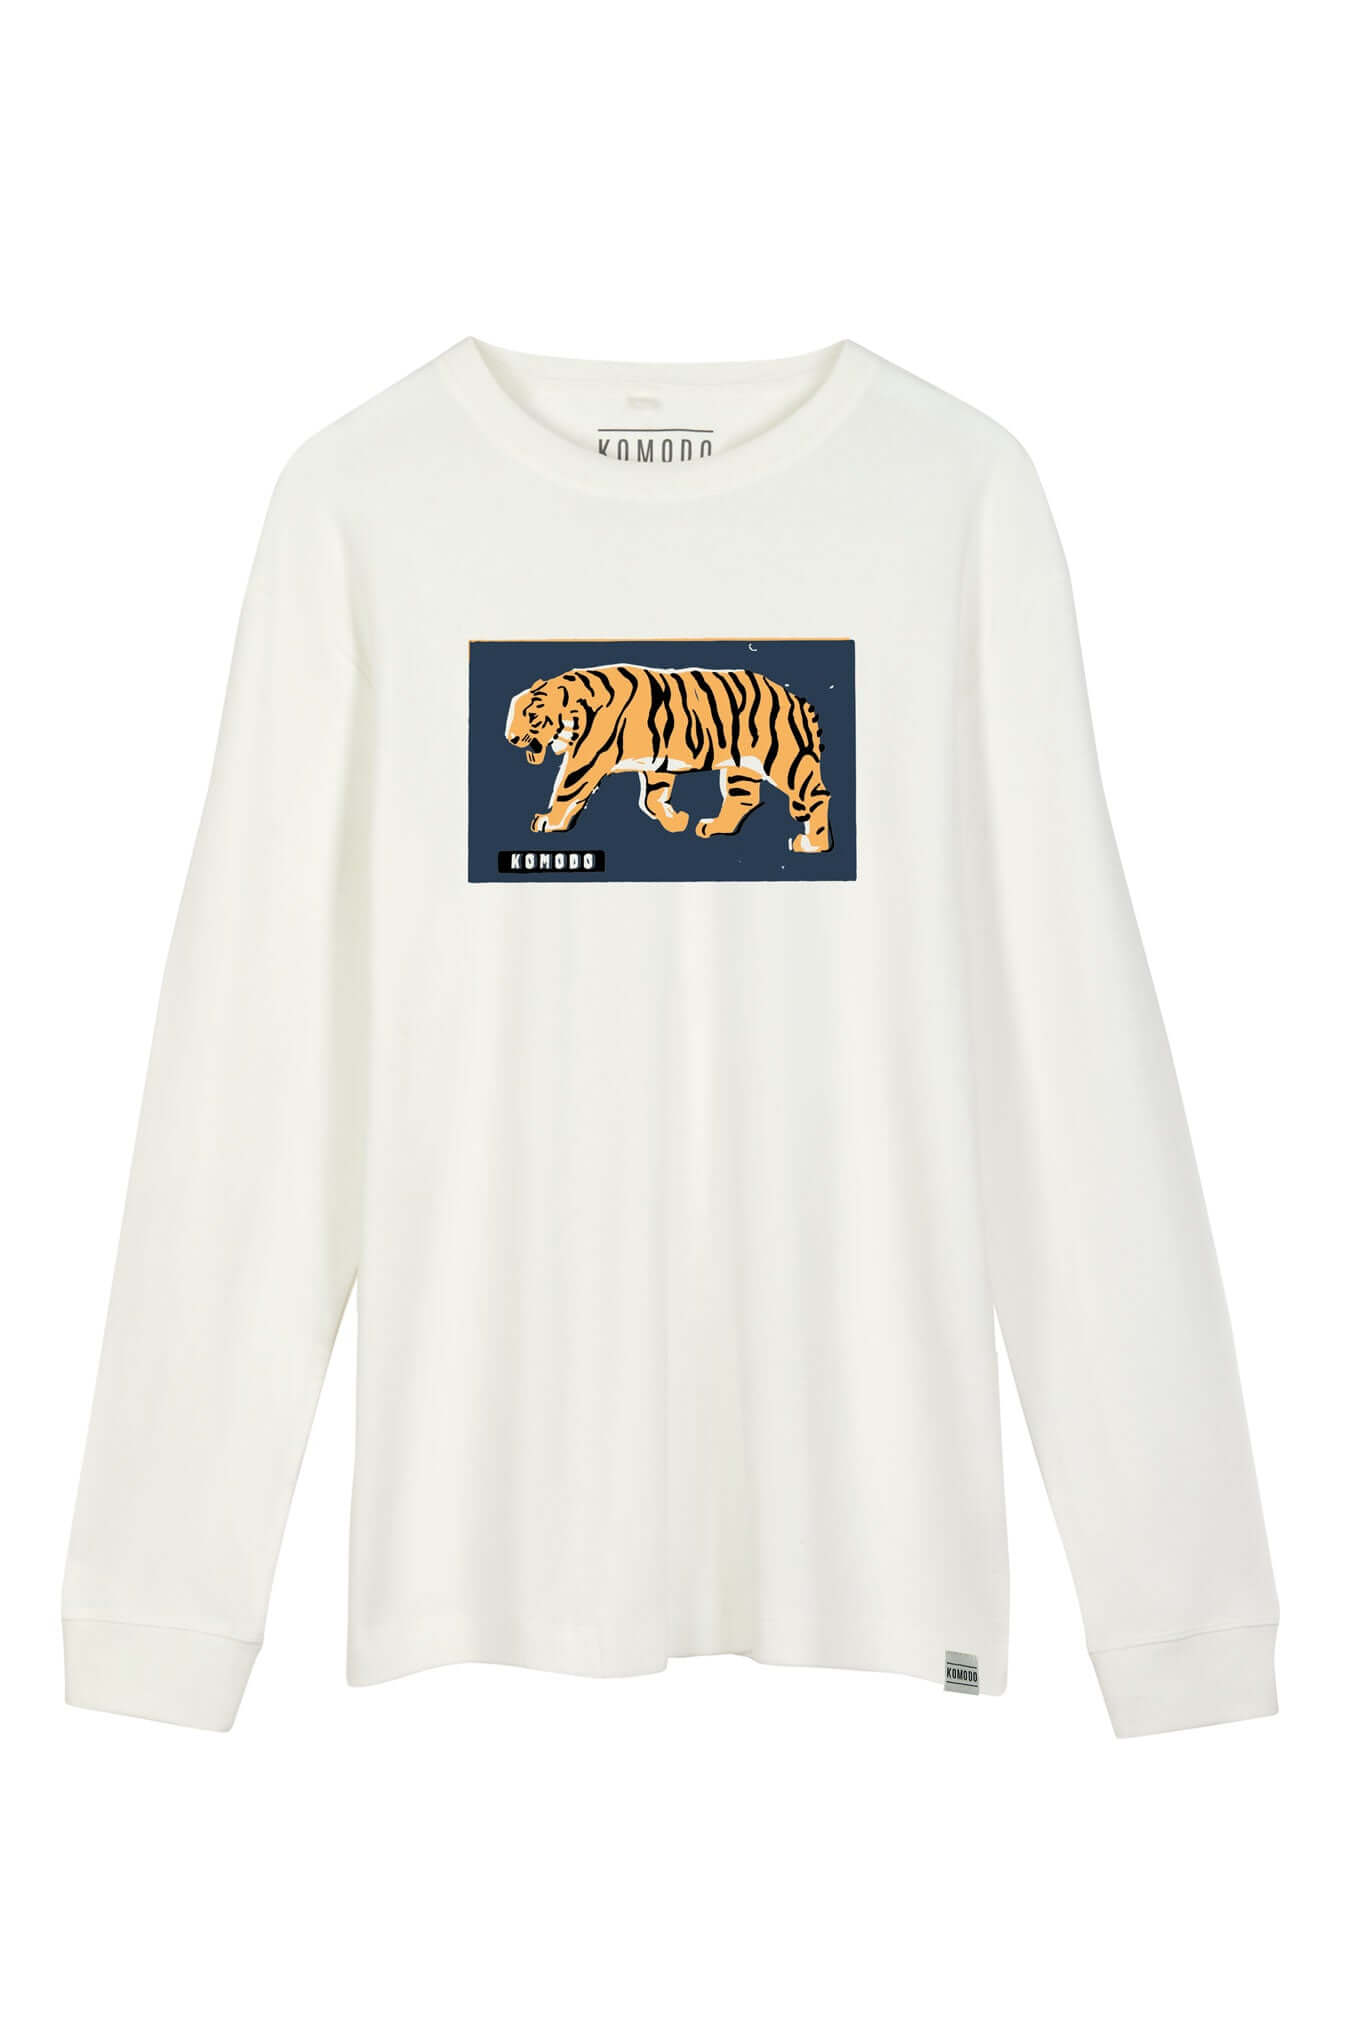 Weisses, langärmeliges T-Shirt HAKON BENGAL TIGER aus 100% Bio-Baumwolle von Komodo